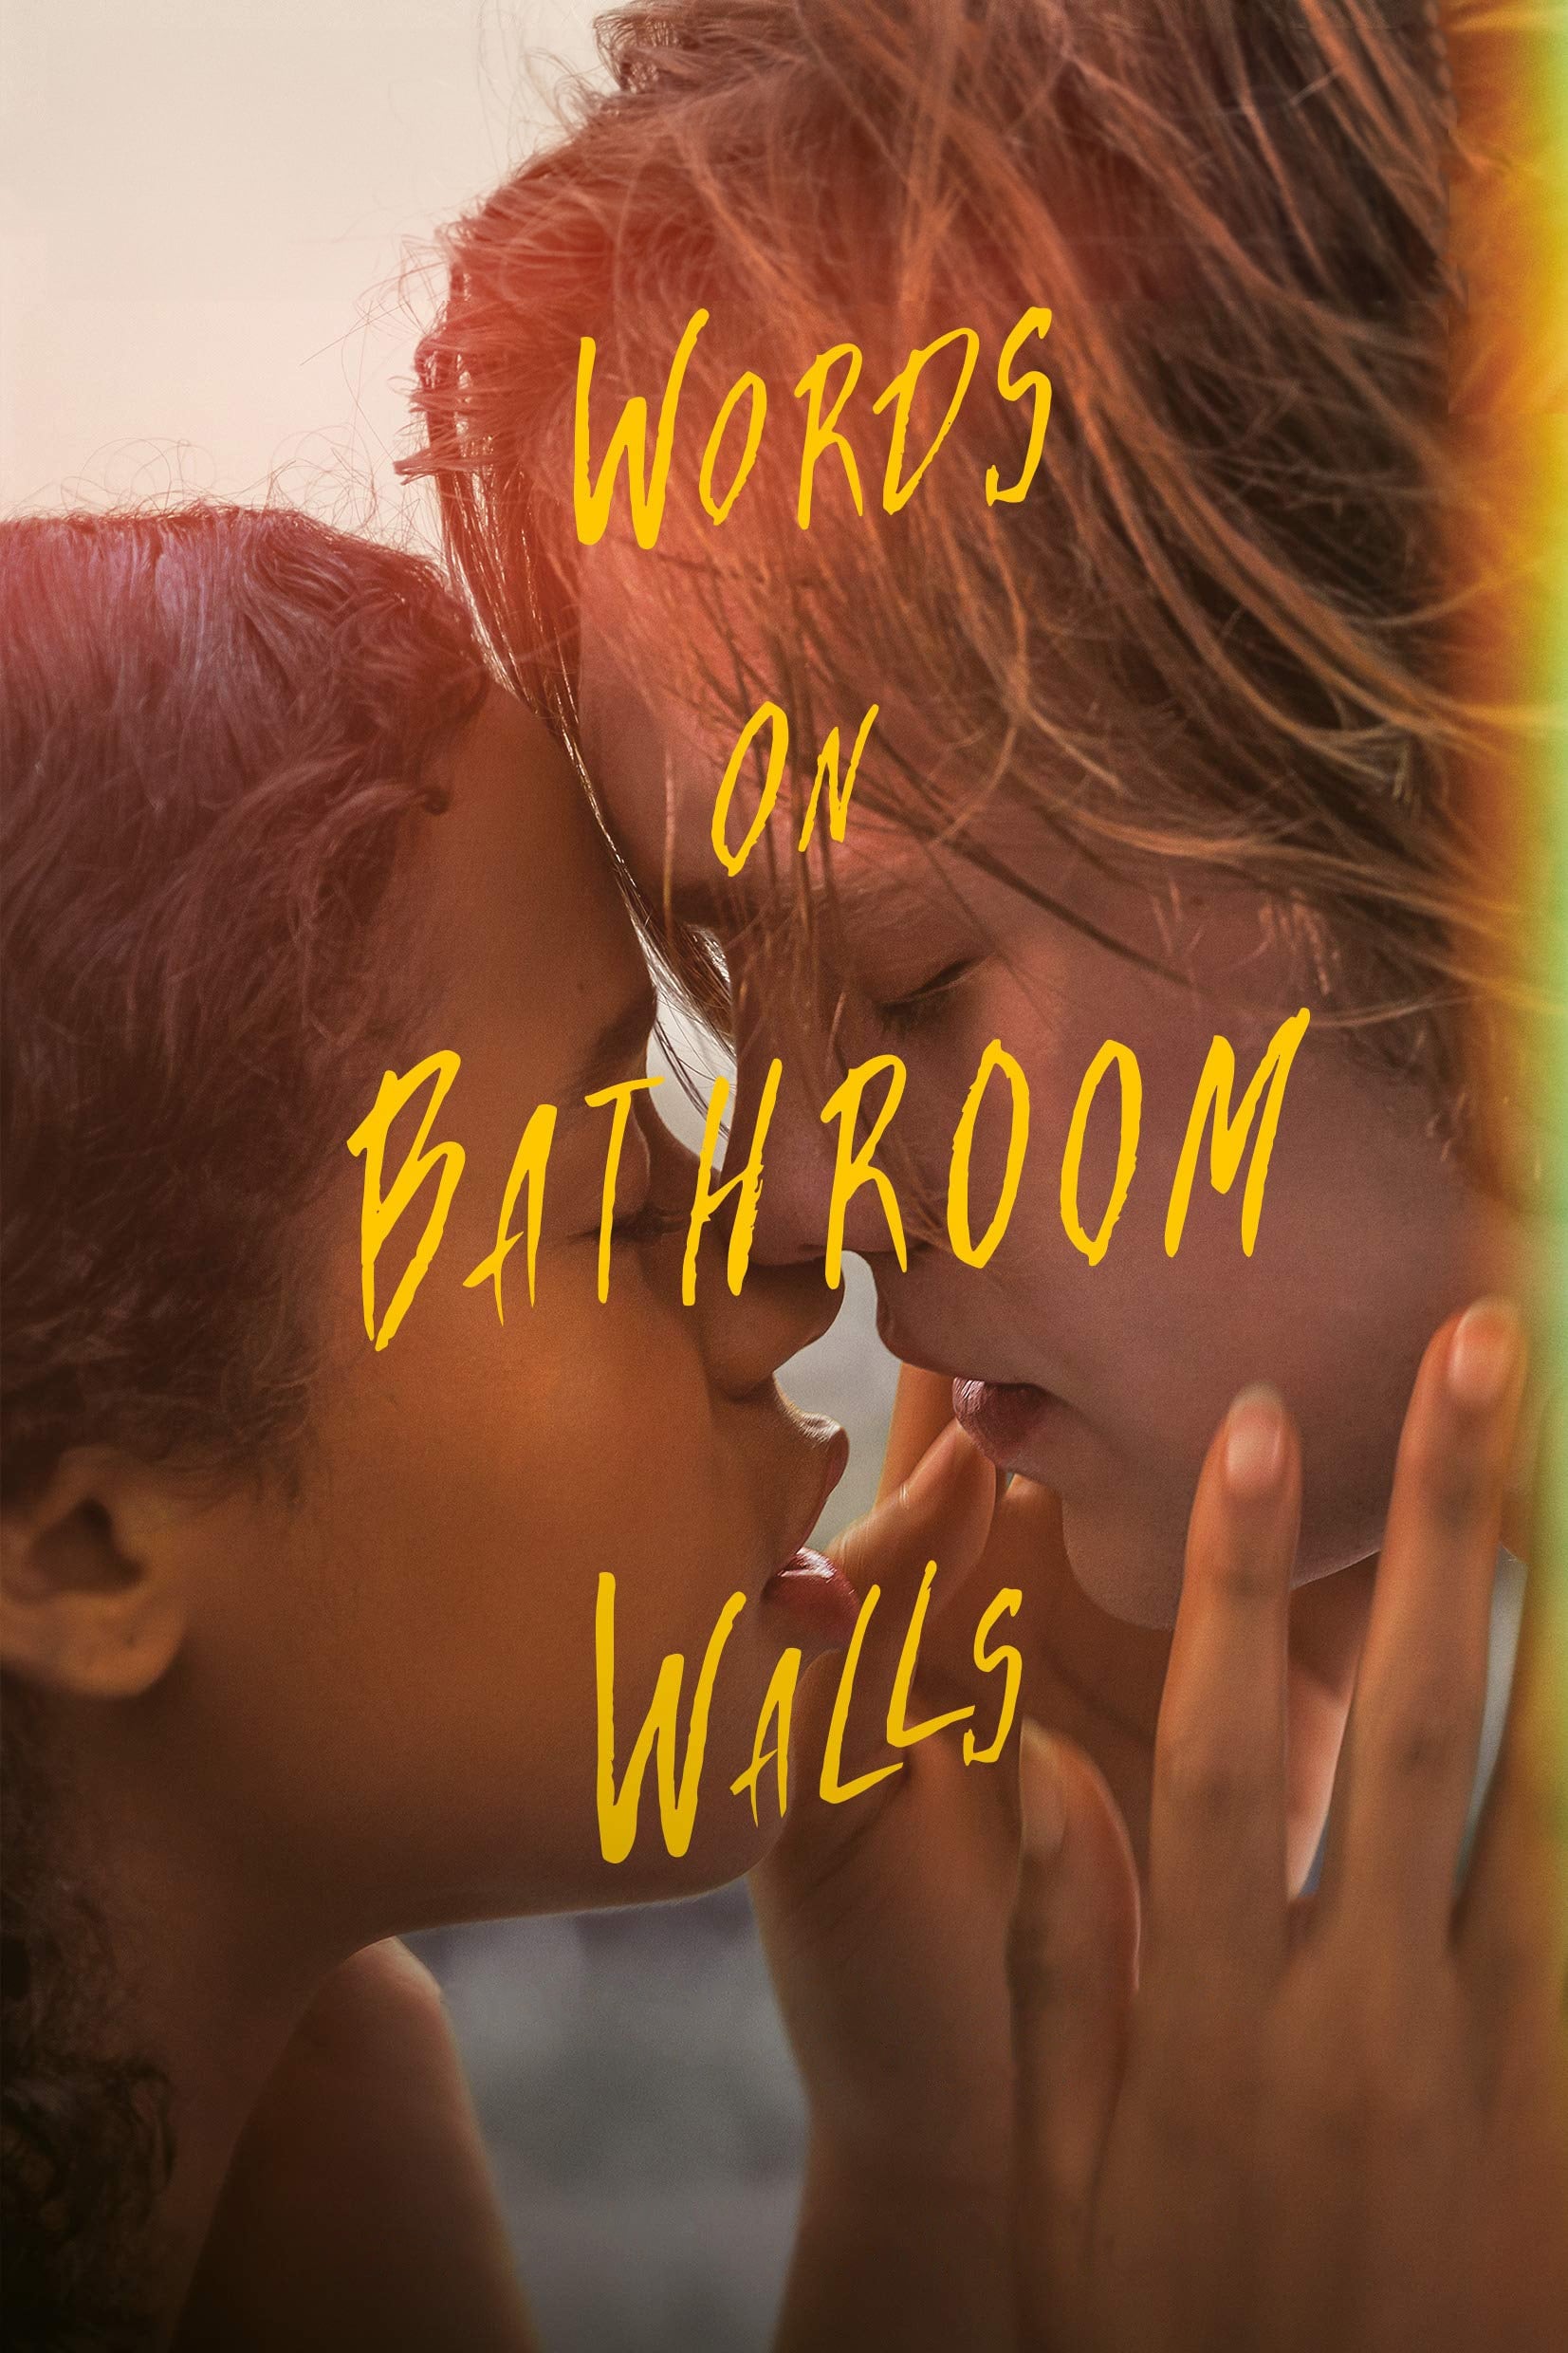 Caratula de Words on Bathroom Walls (Palabras en las paredes del baño) 